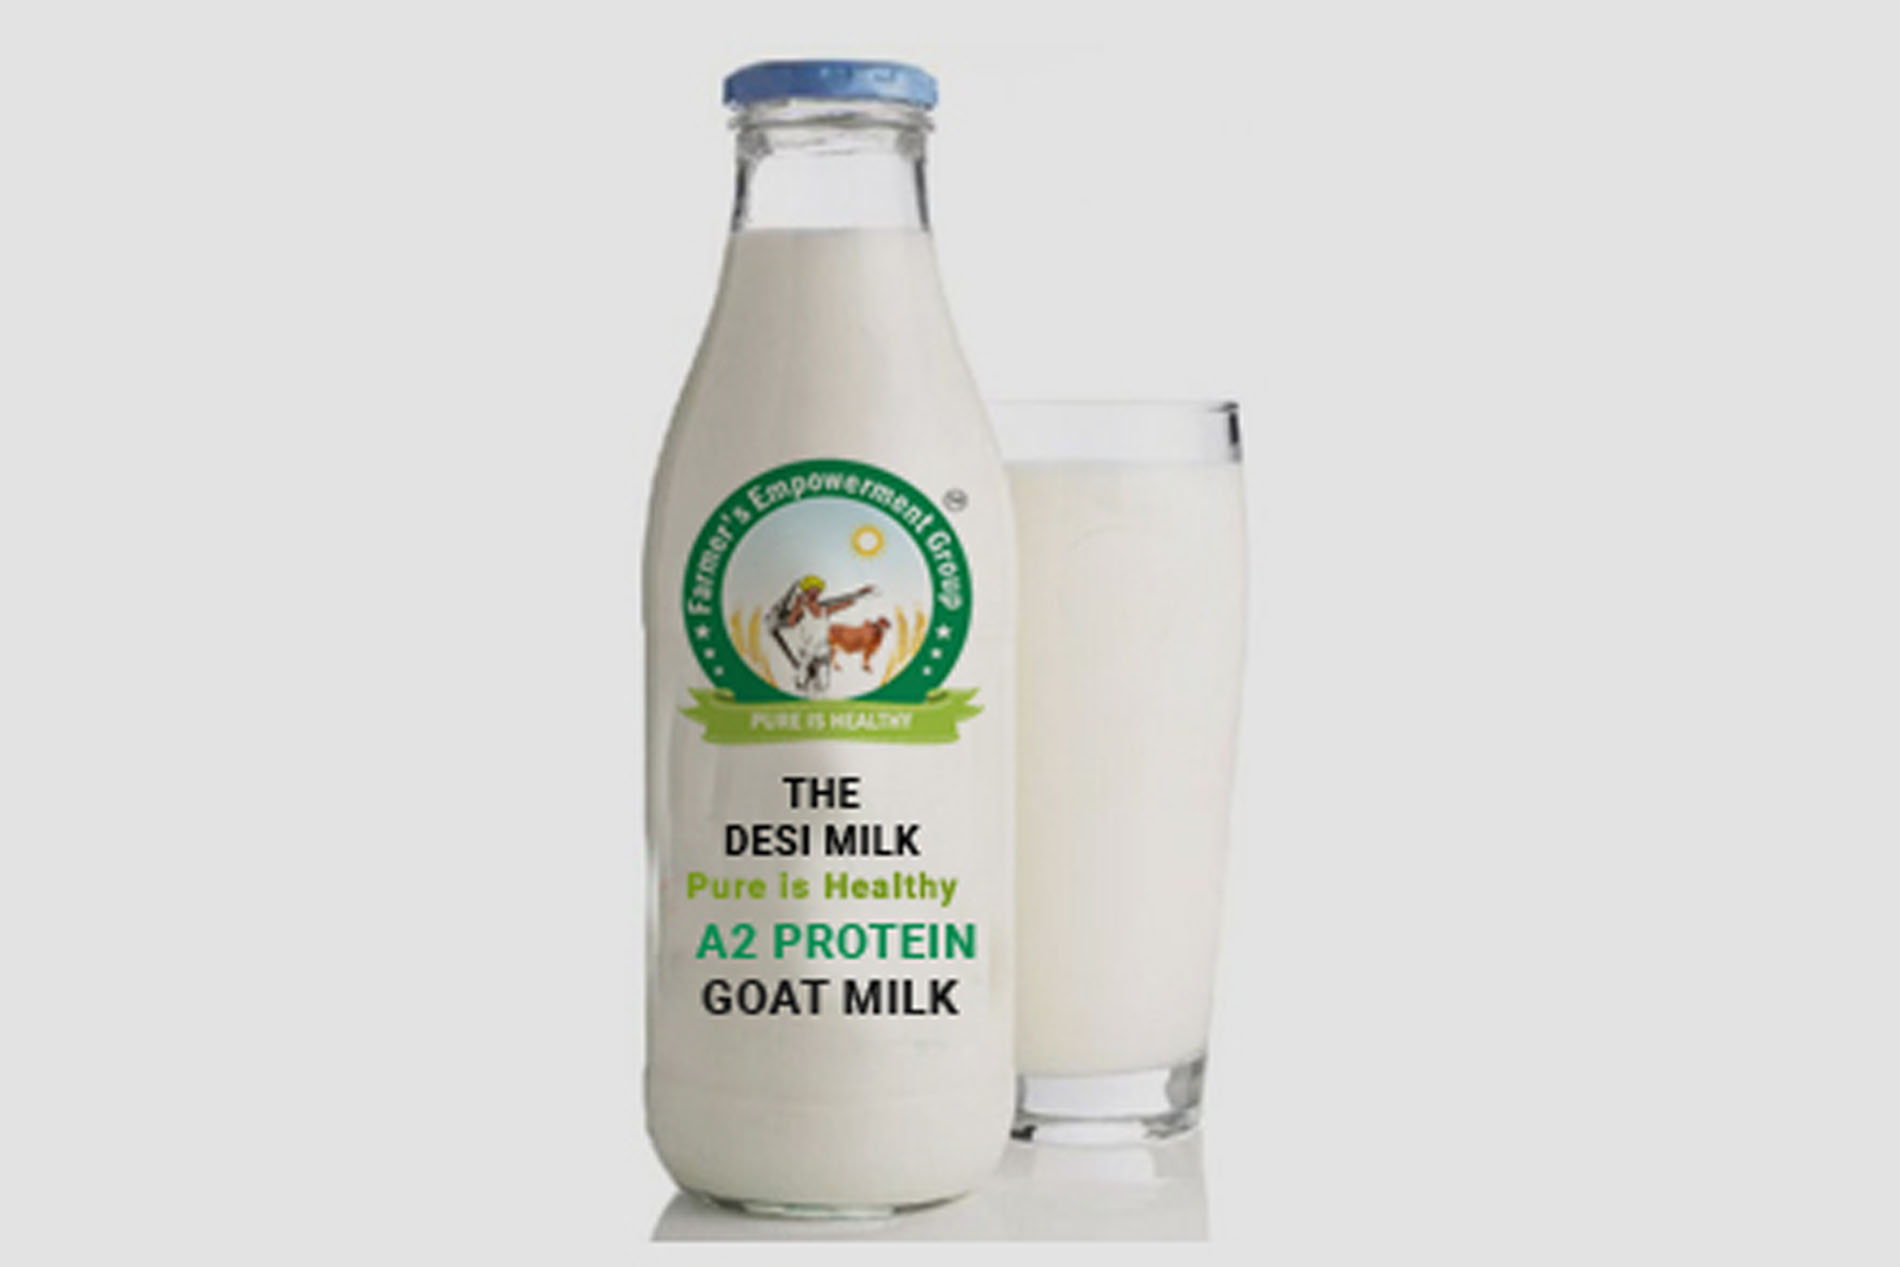 The Desi Milk